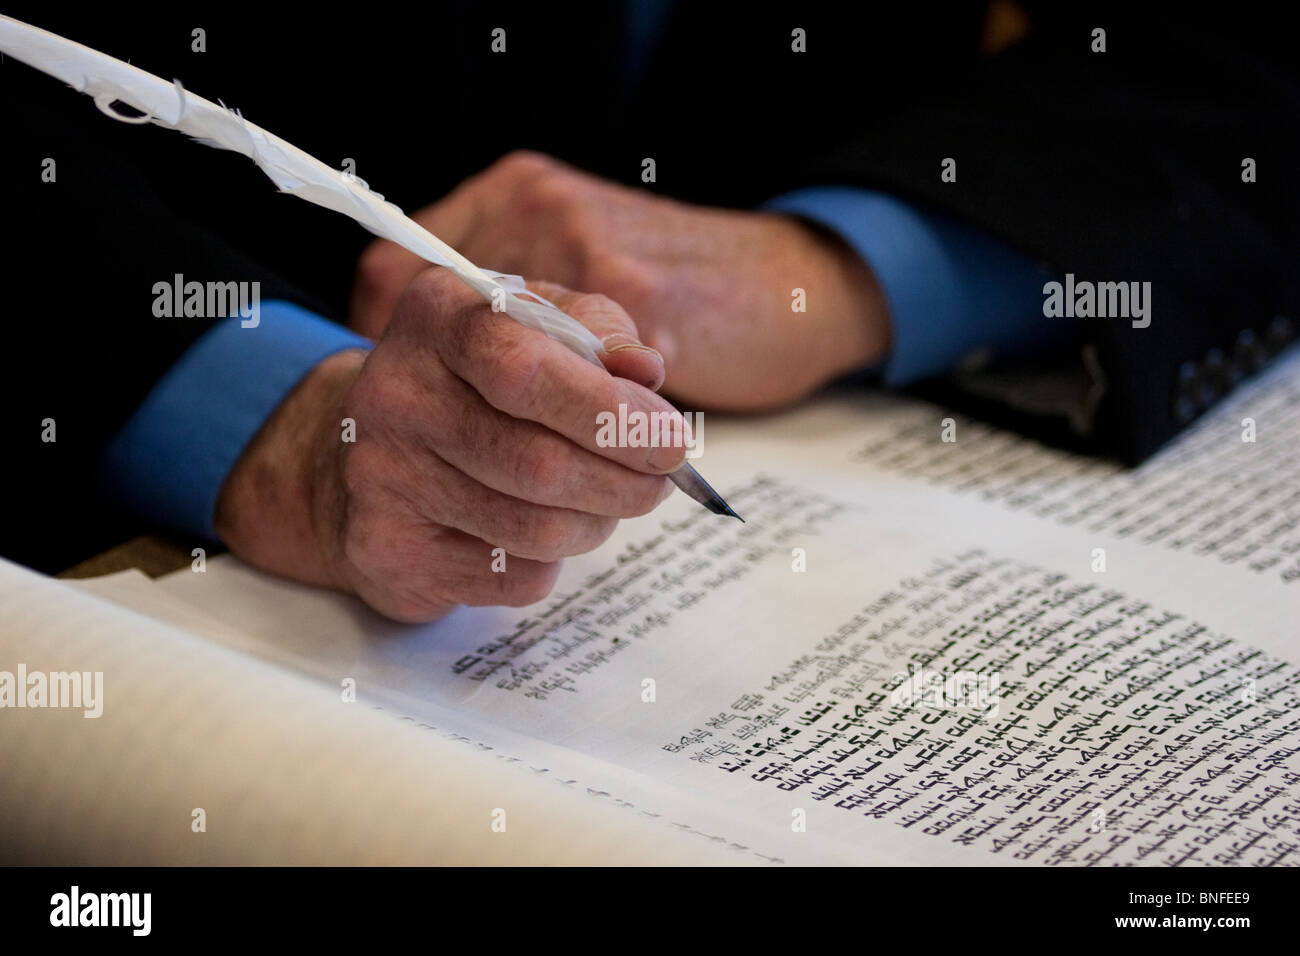 Utilizzando gli inchiostri kosher, pergamena e piuma penna, un sofer crea una nuova Torah per una Congregazione Ebraica nella periferia di Washington, D.C. Foto Stock